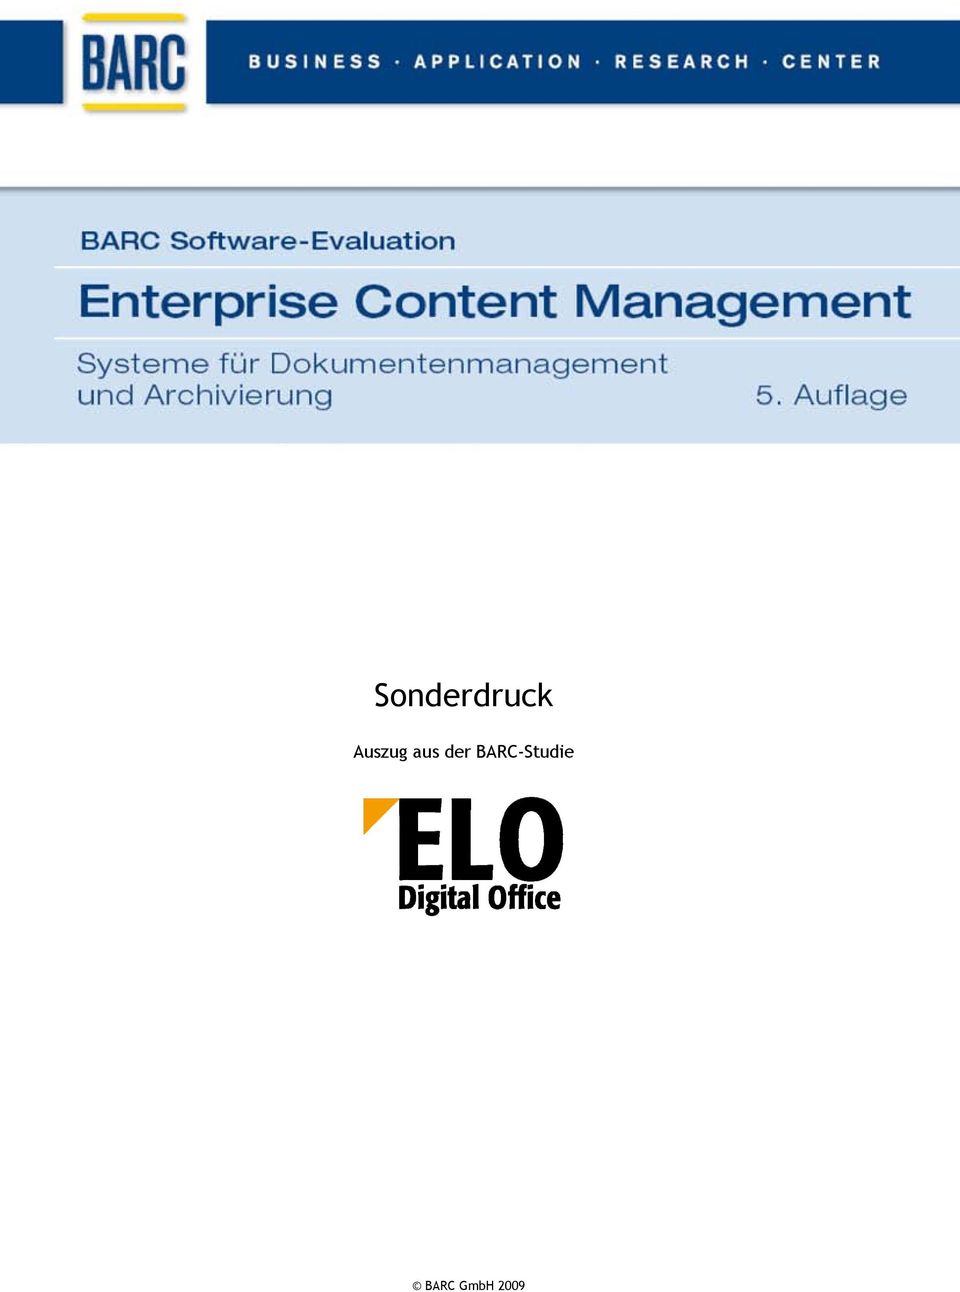 (0)931-880 65 1-28 Auszug aus der BARC-Studie Die BARC-Software-Evaluation Enterprise Content Management beschreibt und bewertet führende Produkte für unternehmensweites Dokumentenmanagement und